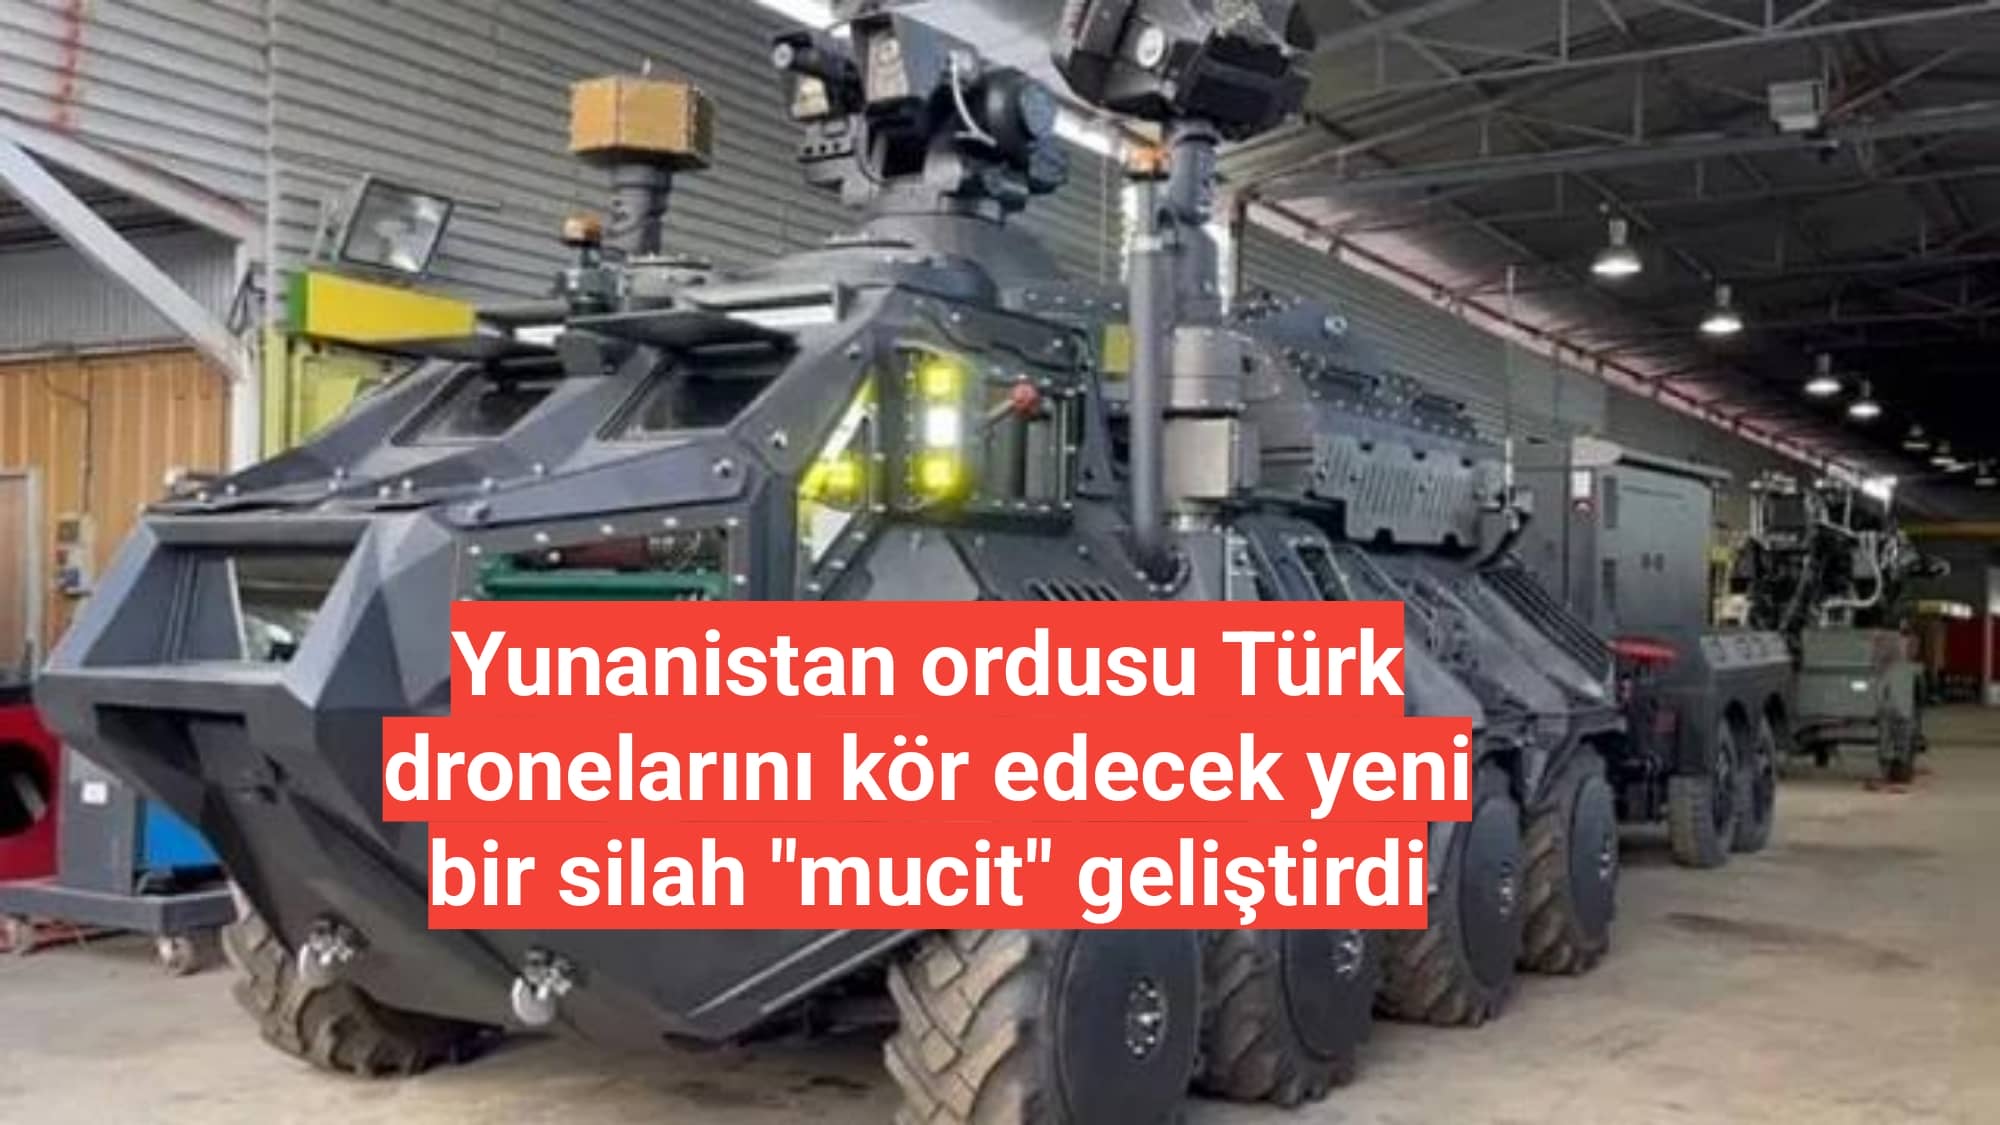 Yunanistan ordusu Türk dronelarını kör edecek yeni bir silah "mucit" geliştirdi